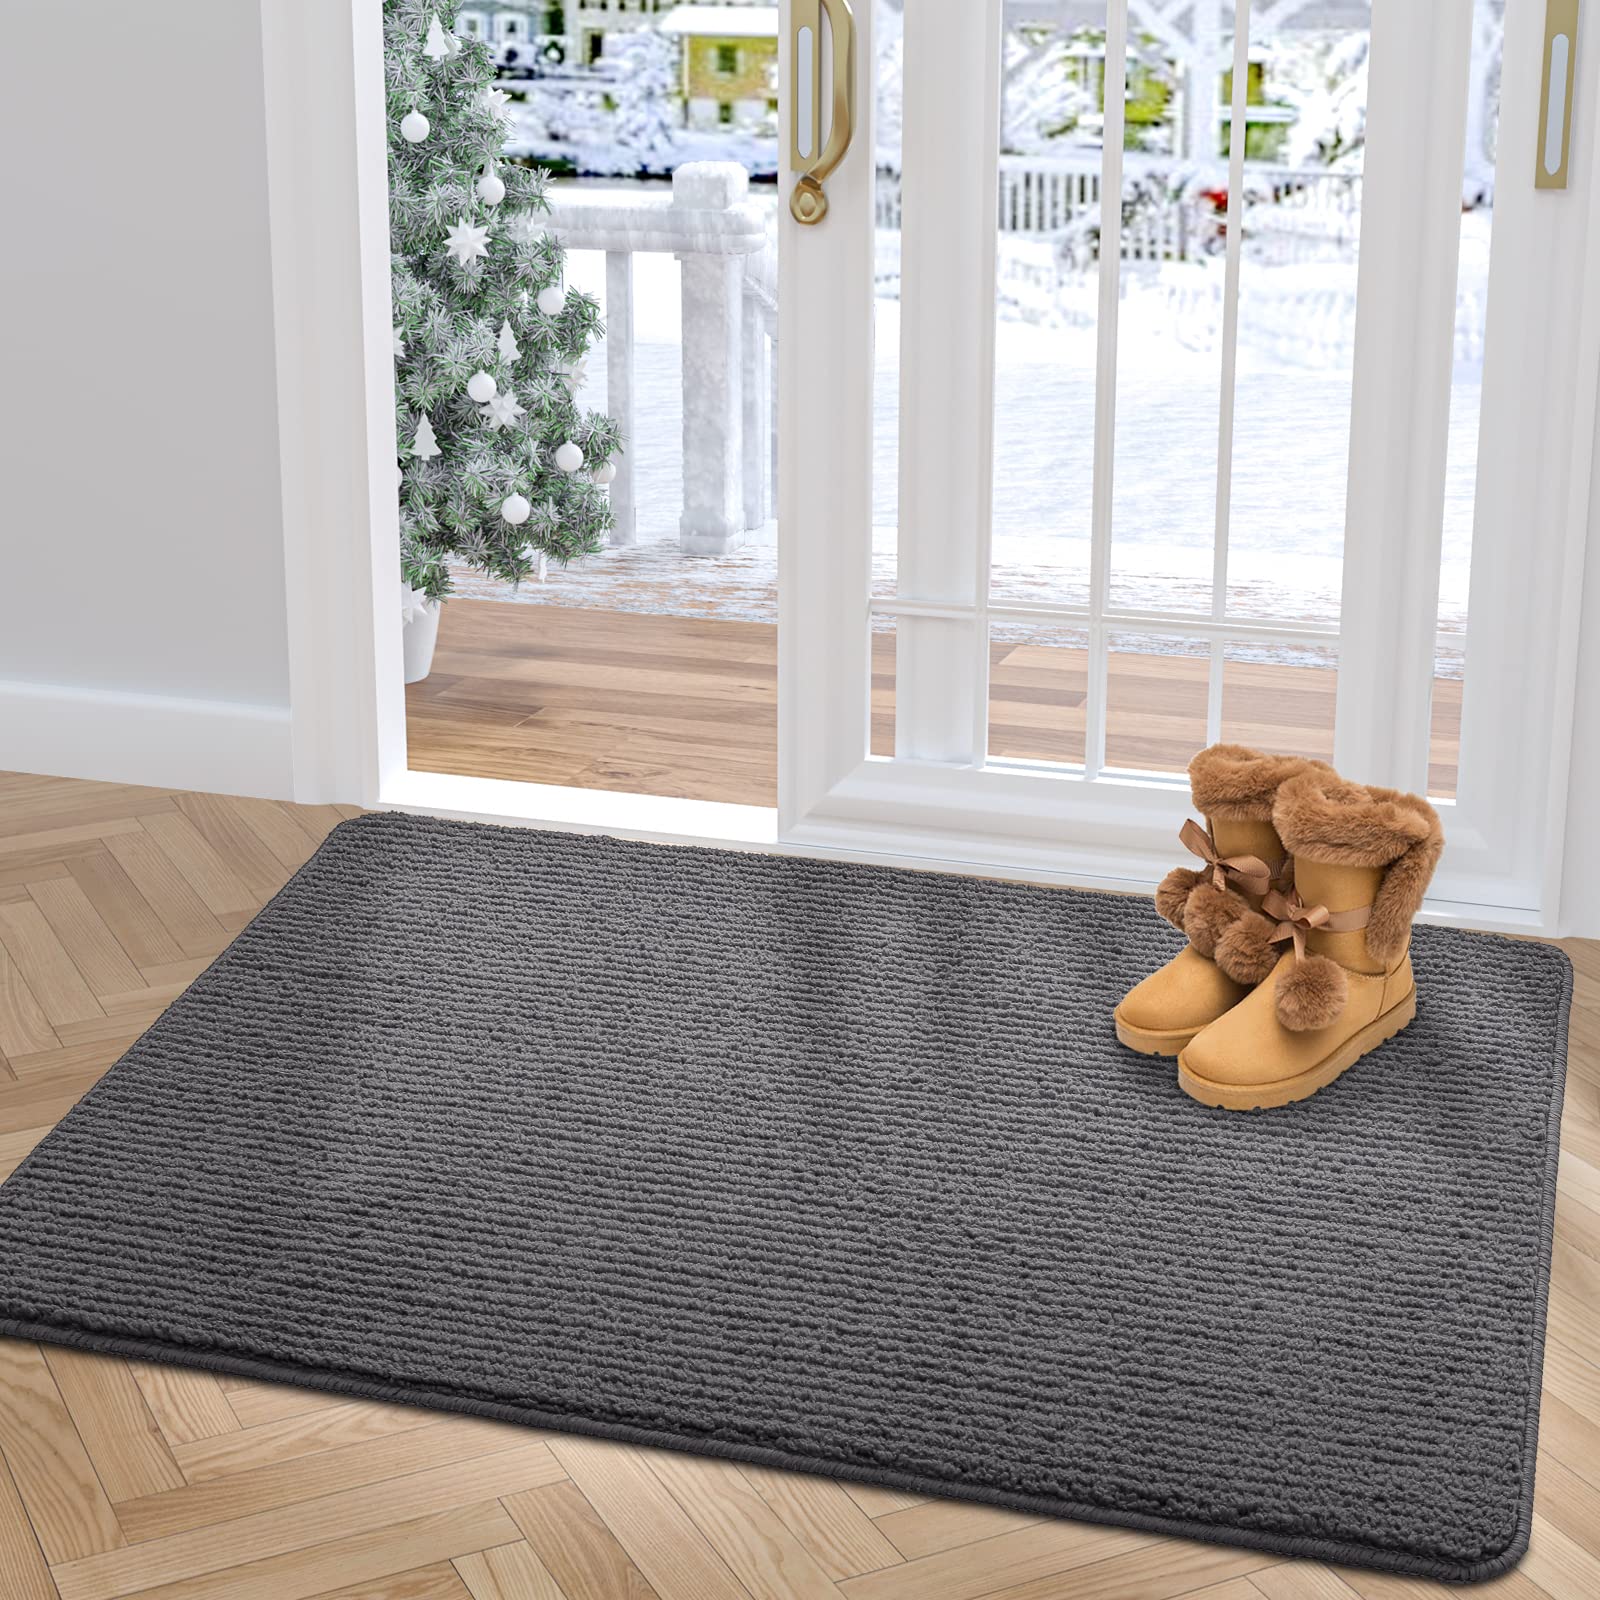 DEXI Indoor Doormat Front Door Mat, Absorbent Non-Slip Entry Rug